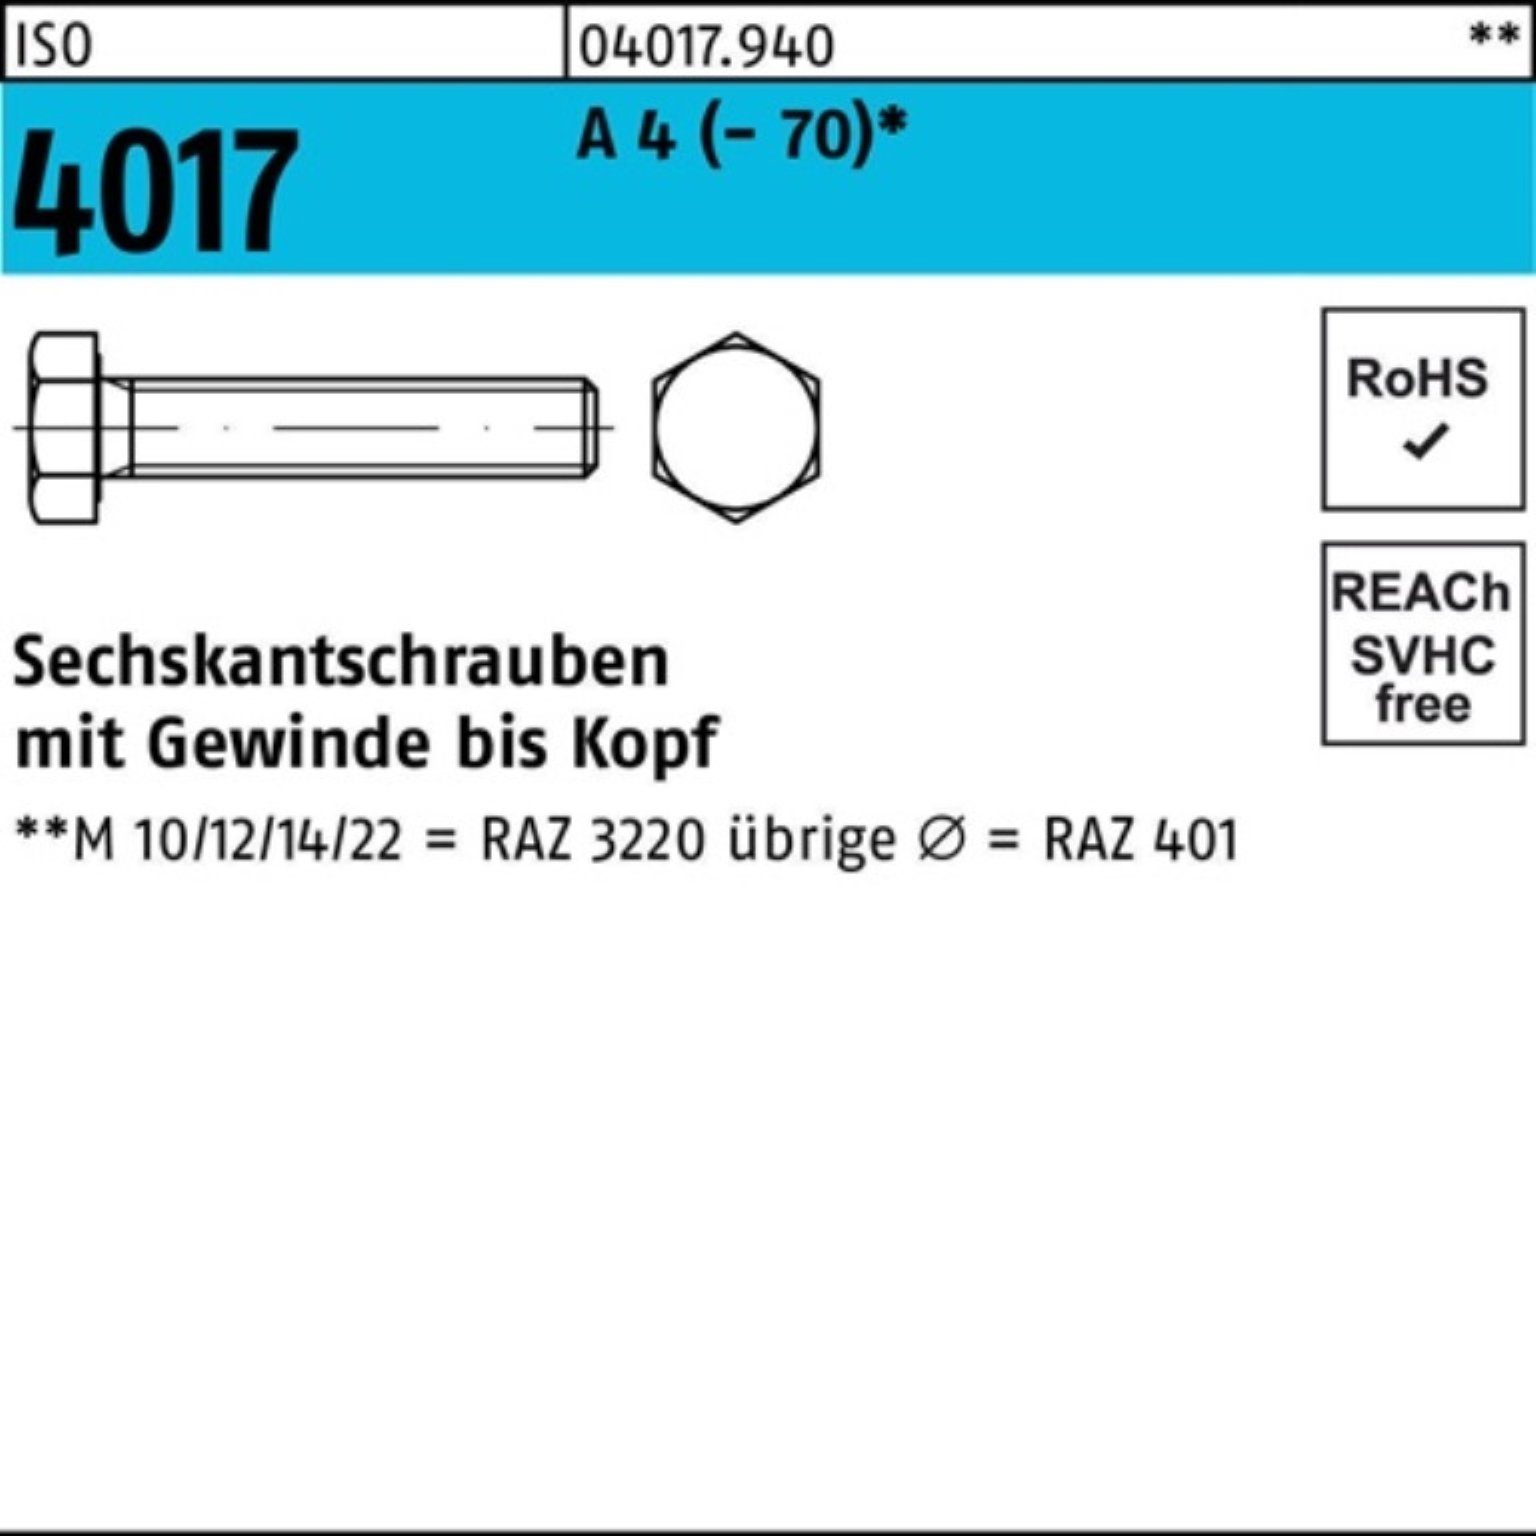 Bufab Sechskantschraube 100er Pack Sechskantschraube ISO 4017 VG M18x 60 A 4 (70) 1 Stück I